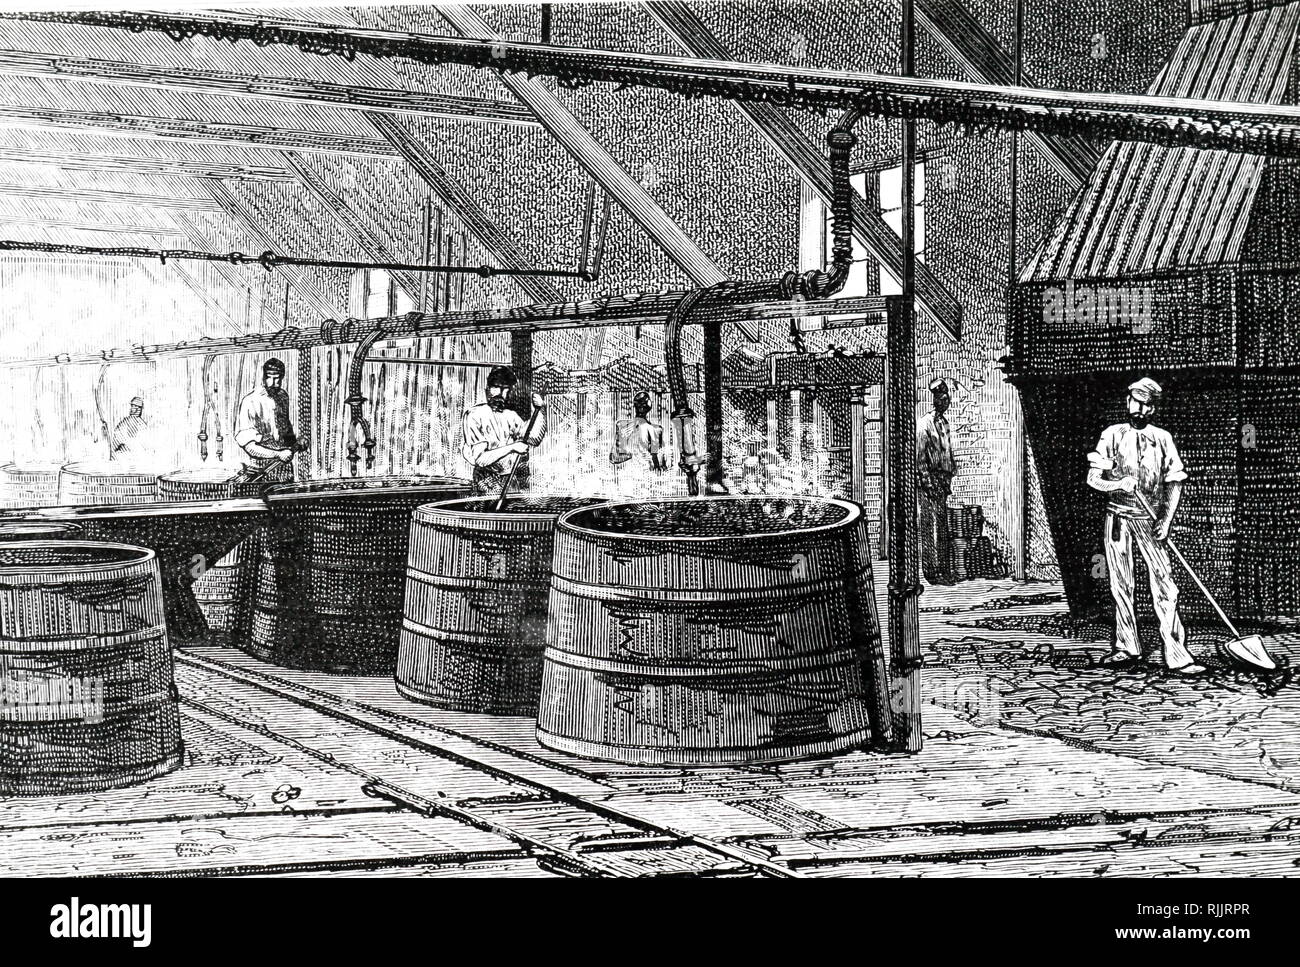 Ein kupferstich mit der Darstellung der bottiche Kochen der Käsemasse von der Oberfläche der Seine bei der Abwasserkanal, Mündungen von Rohrleitungen in der Herstellung von Seife verwendet wurden. Vom 19. Jahrhundert Stockfoto